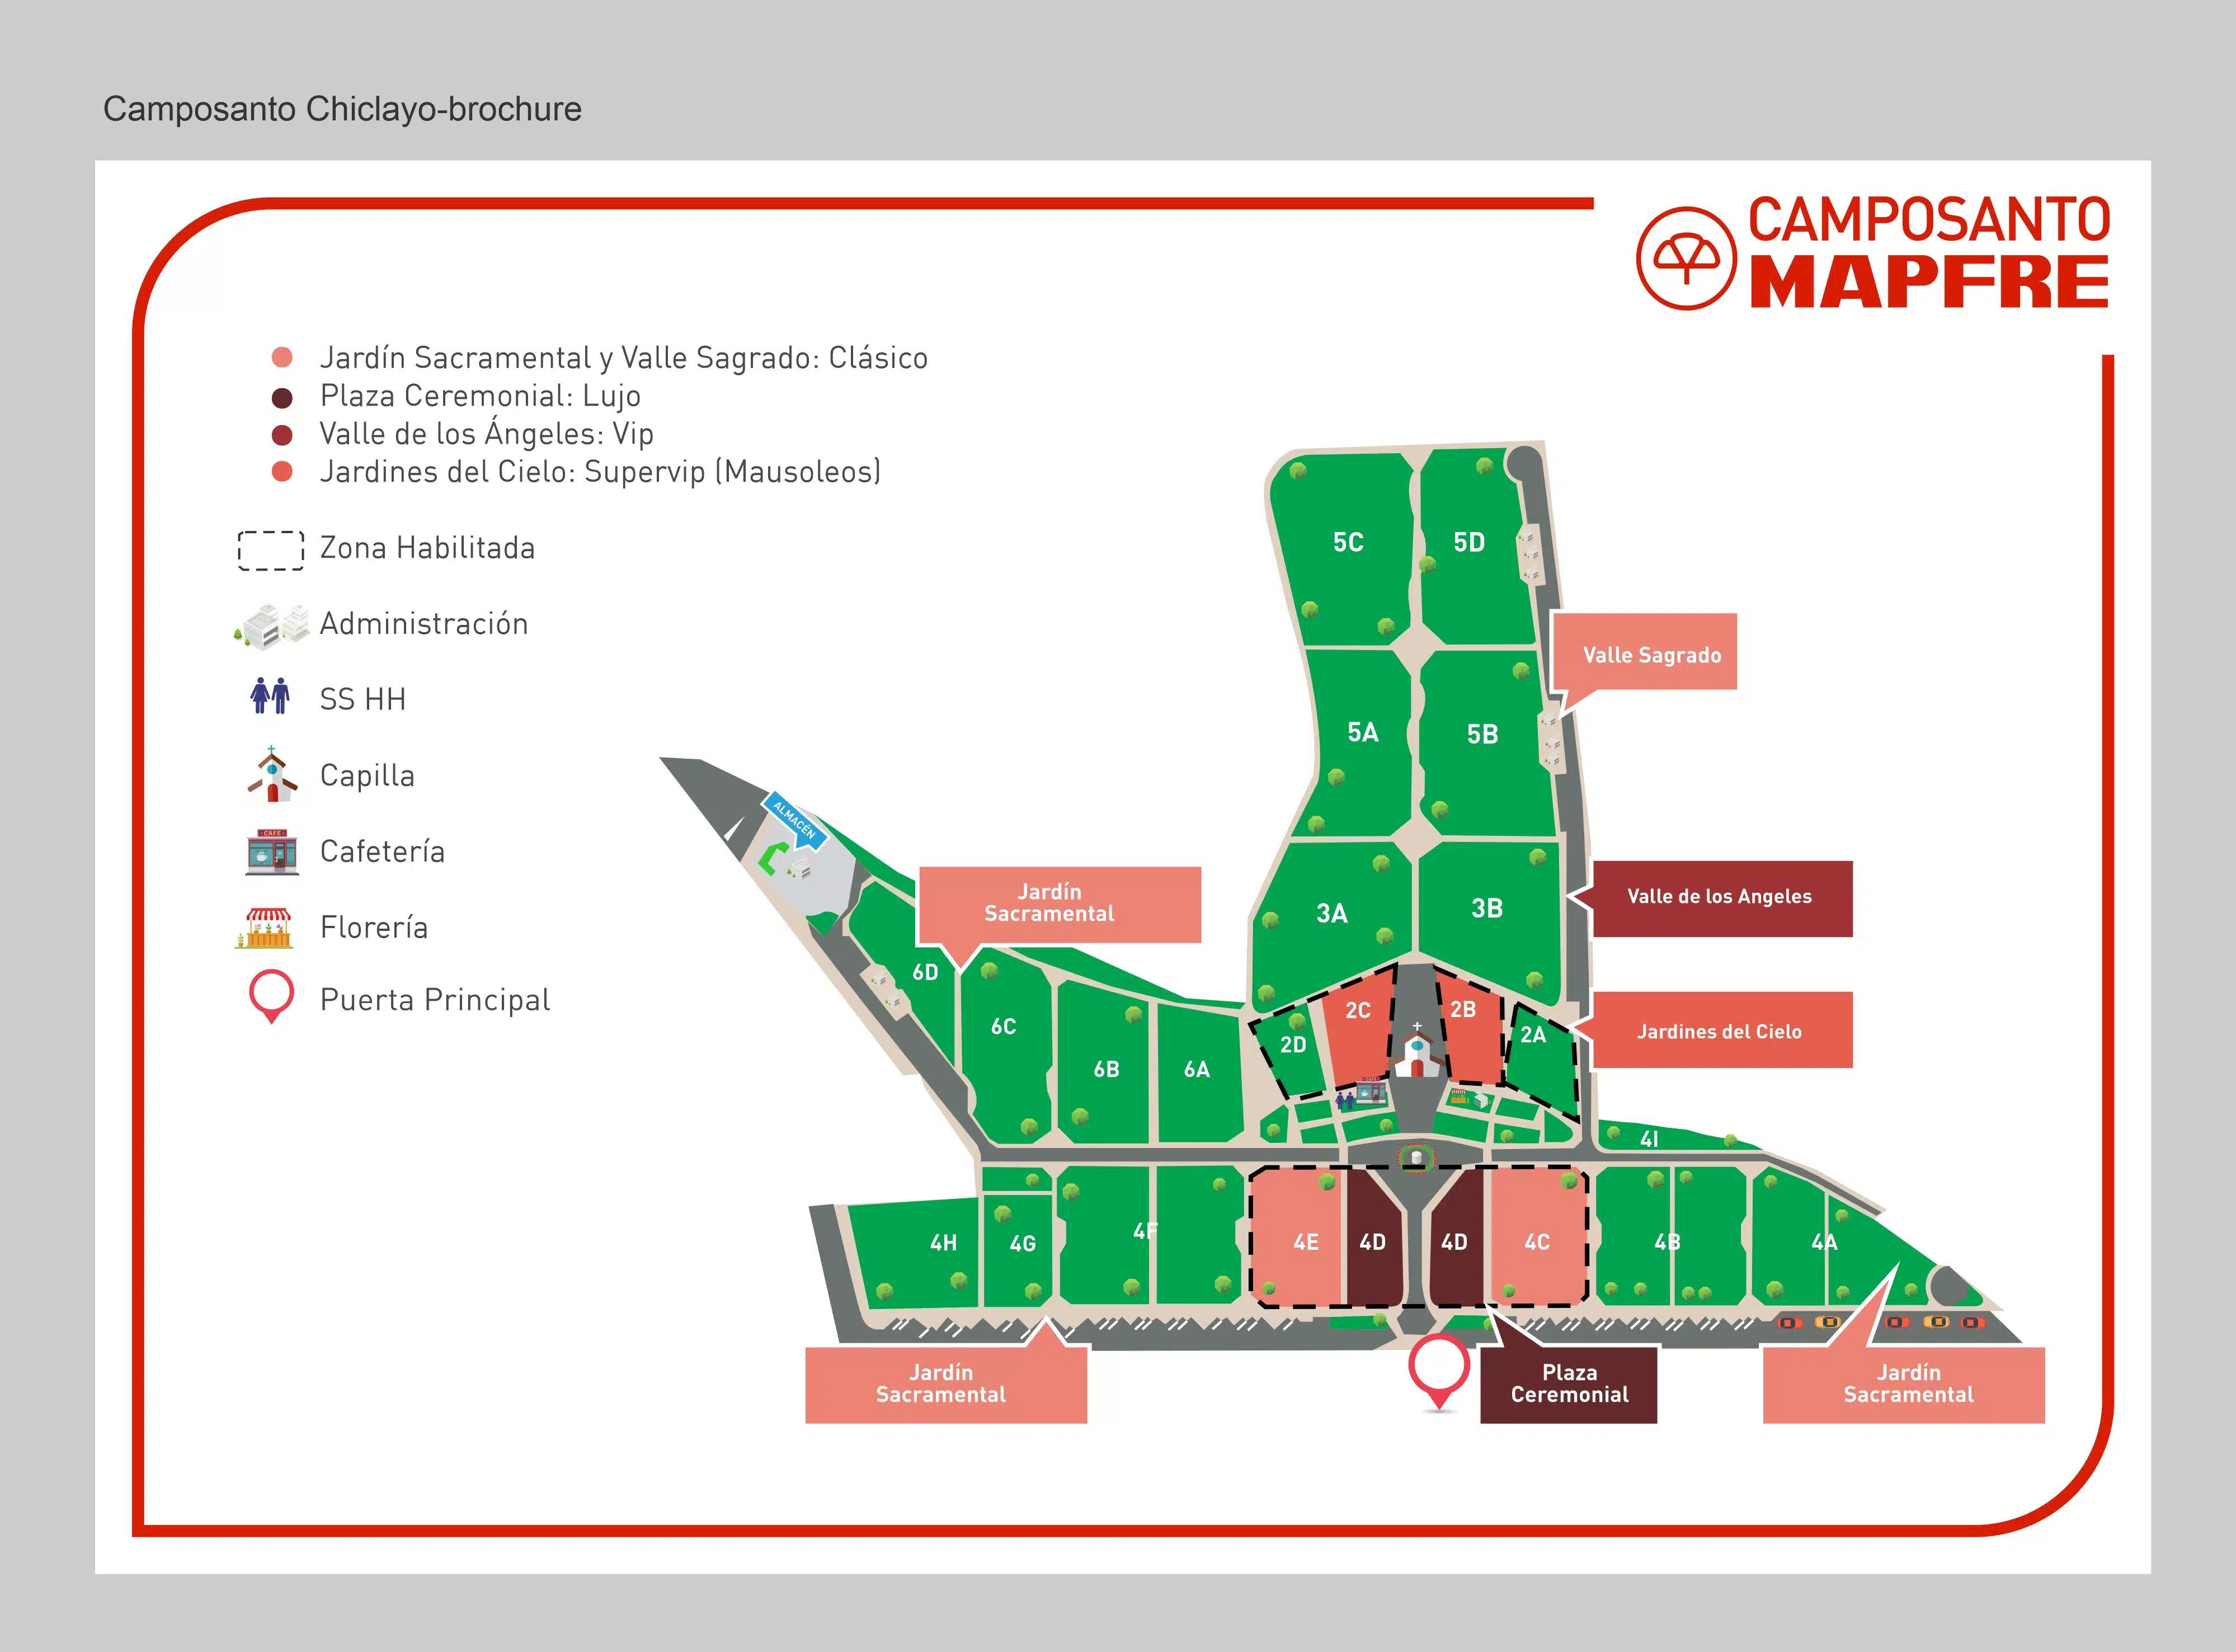 Espacios Camposanto MAPFRE Chiclayo